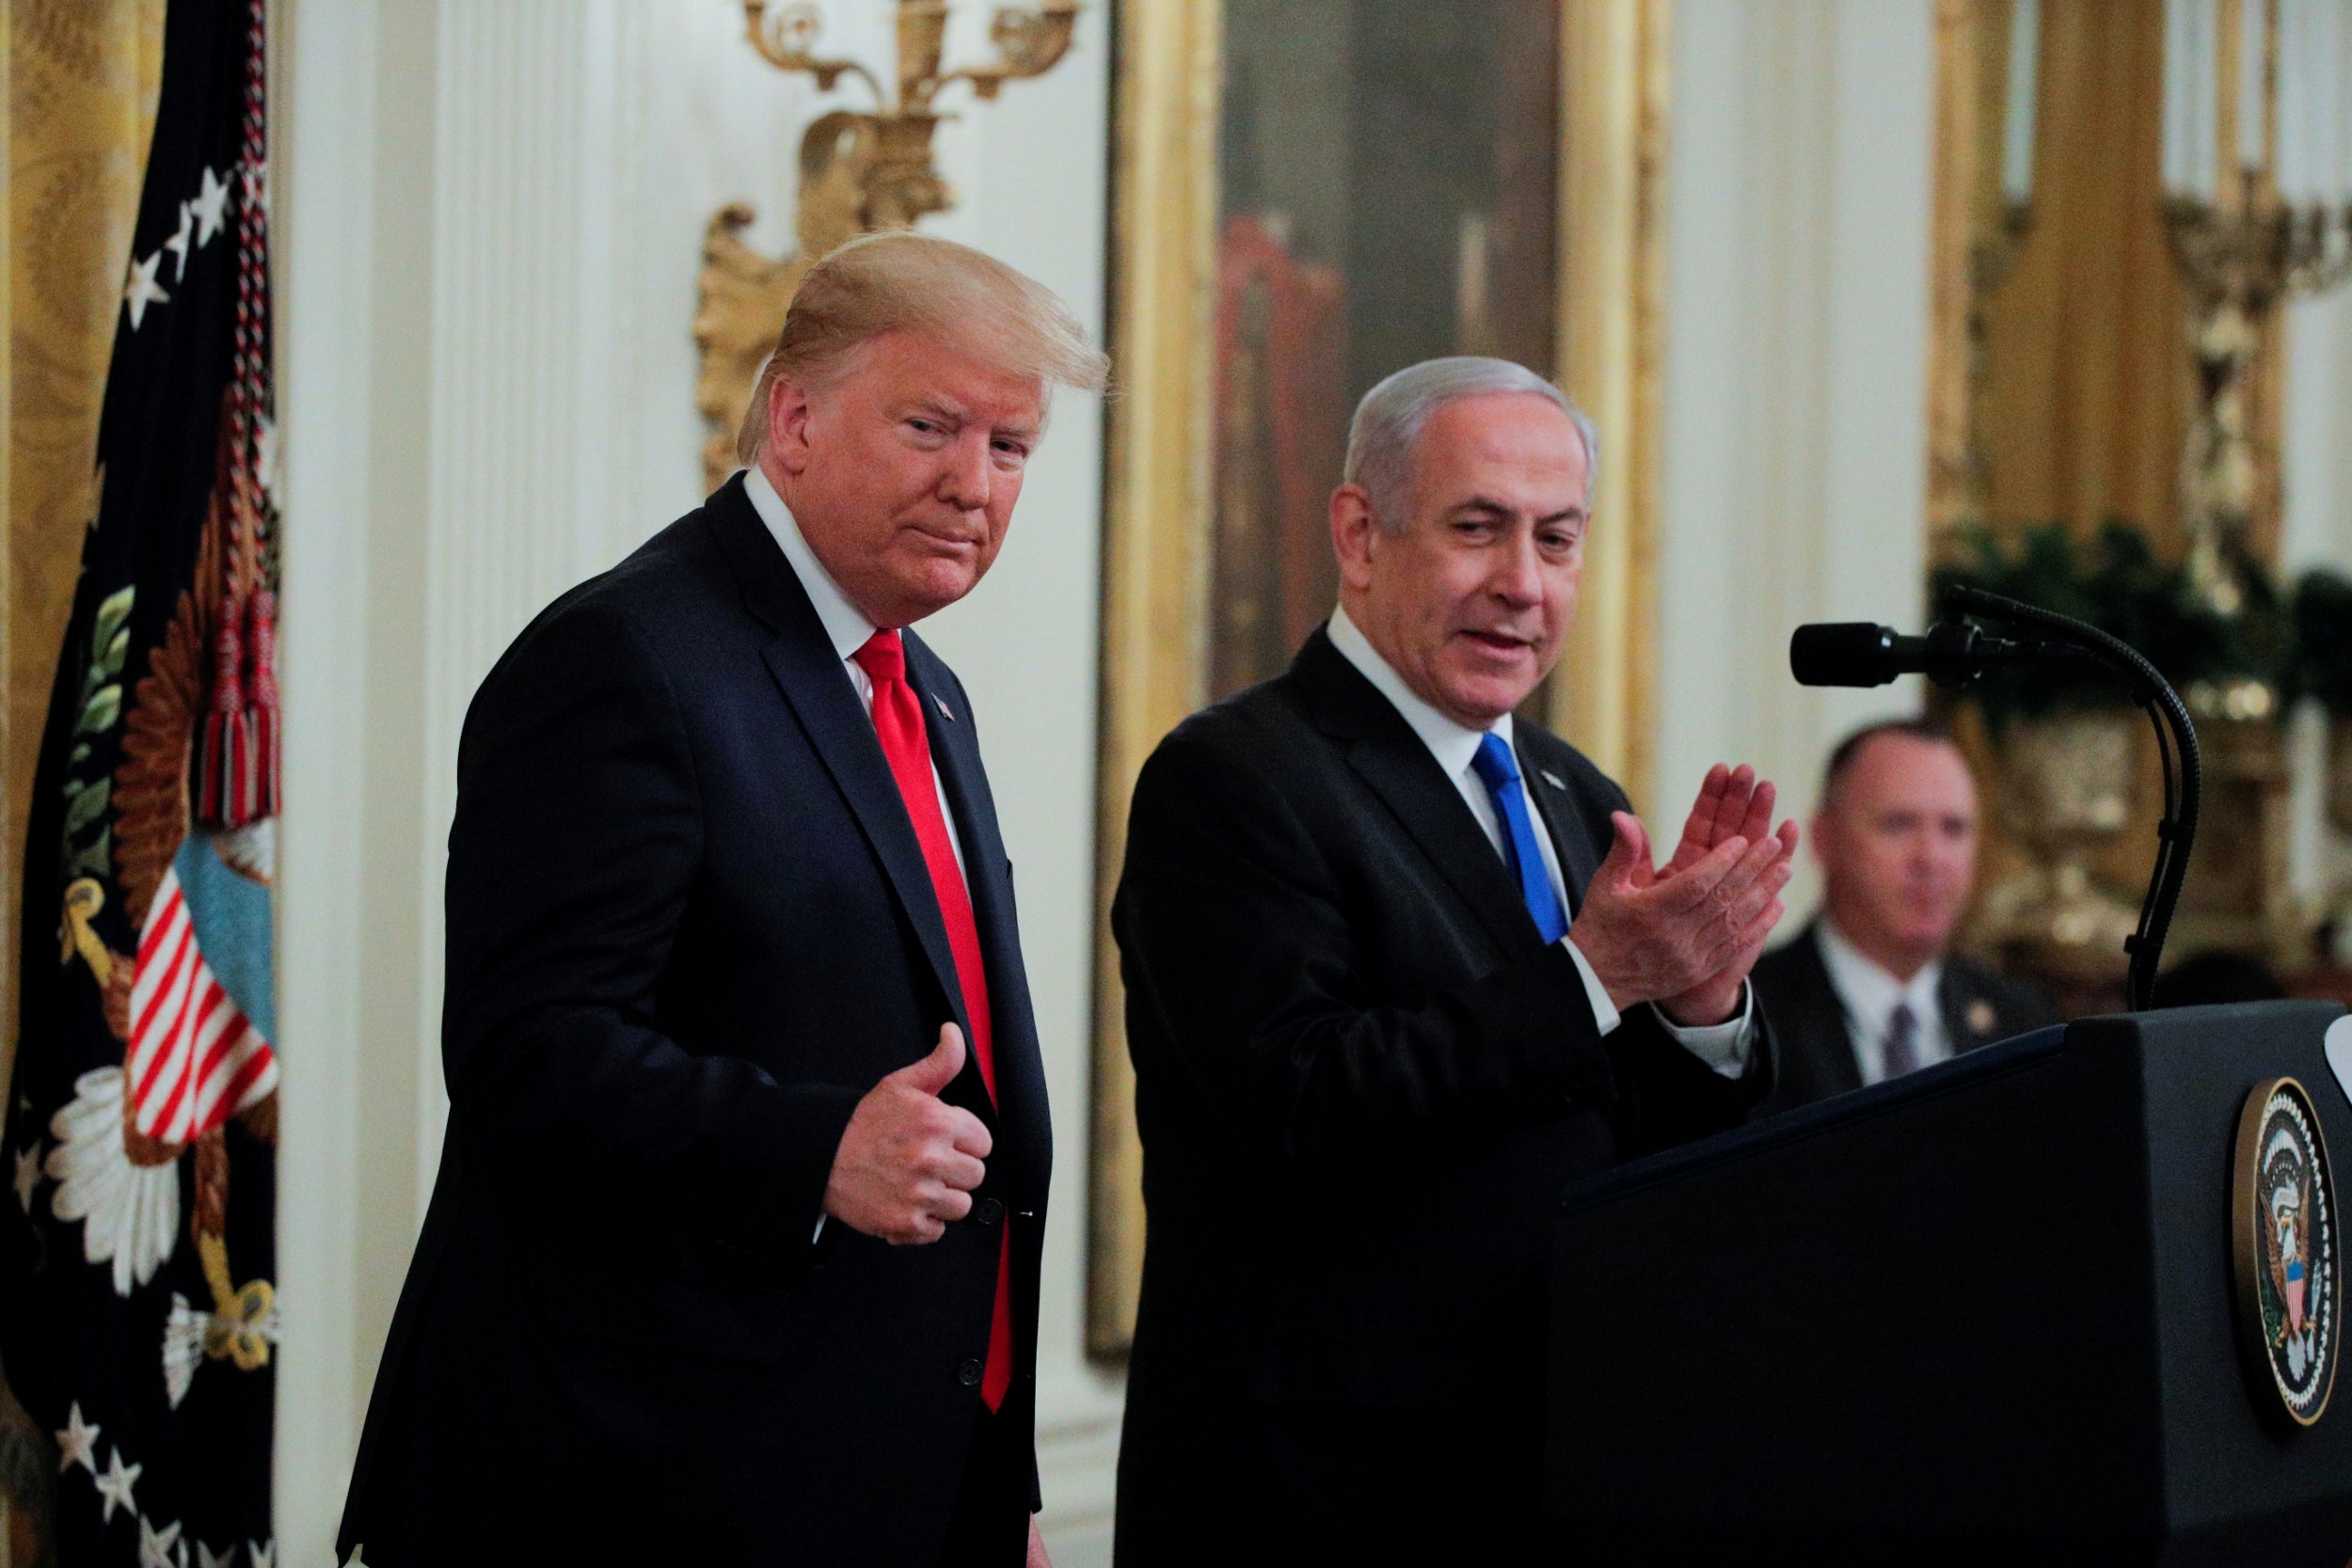 Donald Trump, left, with Benjamin Netanyahu during a recent visit